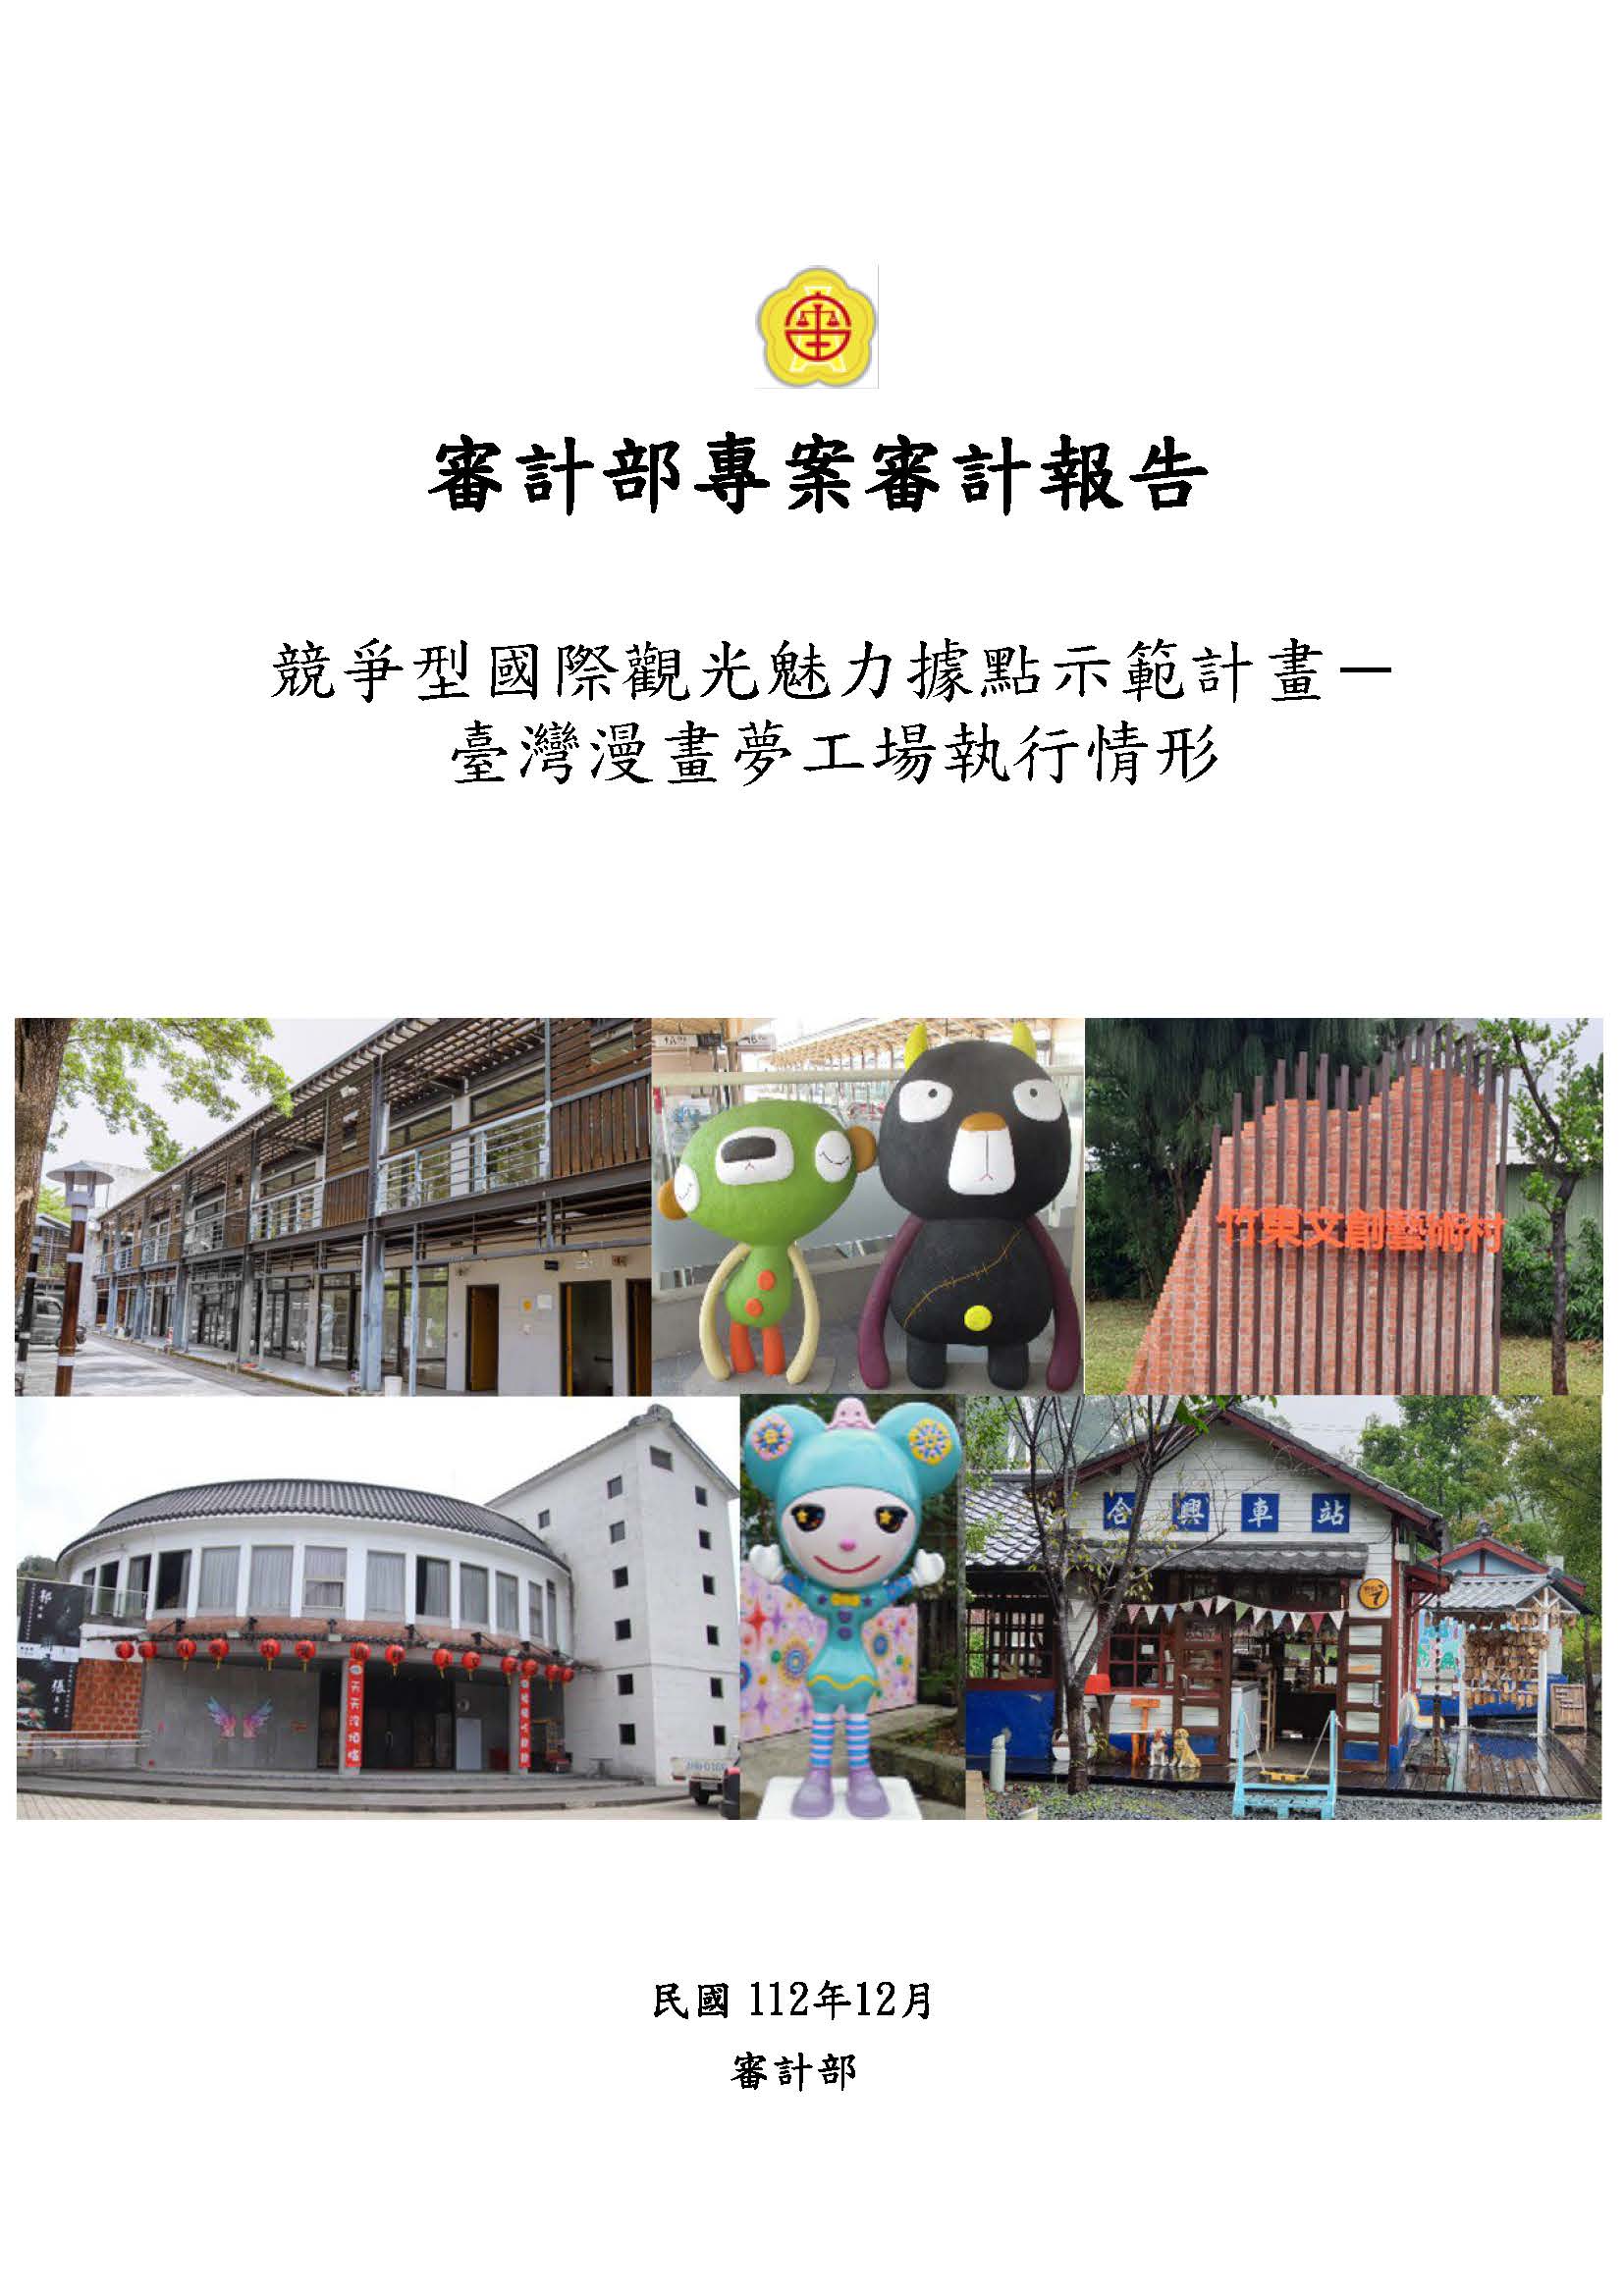 競爭型國際觀光魅力據點示範計畫－臺灣漫畫夢工場執行情形